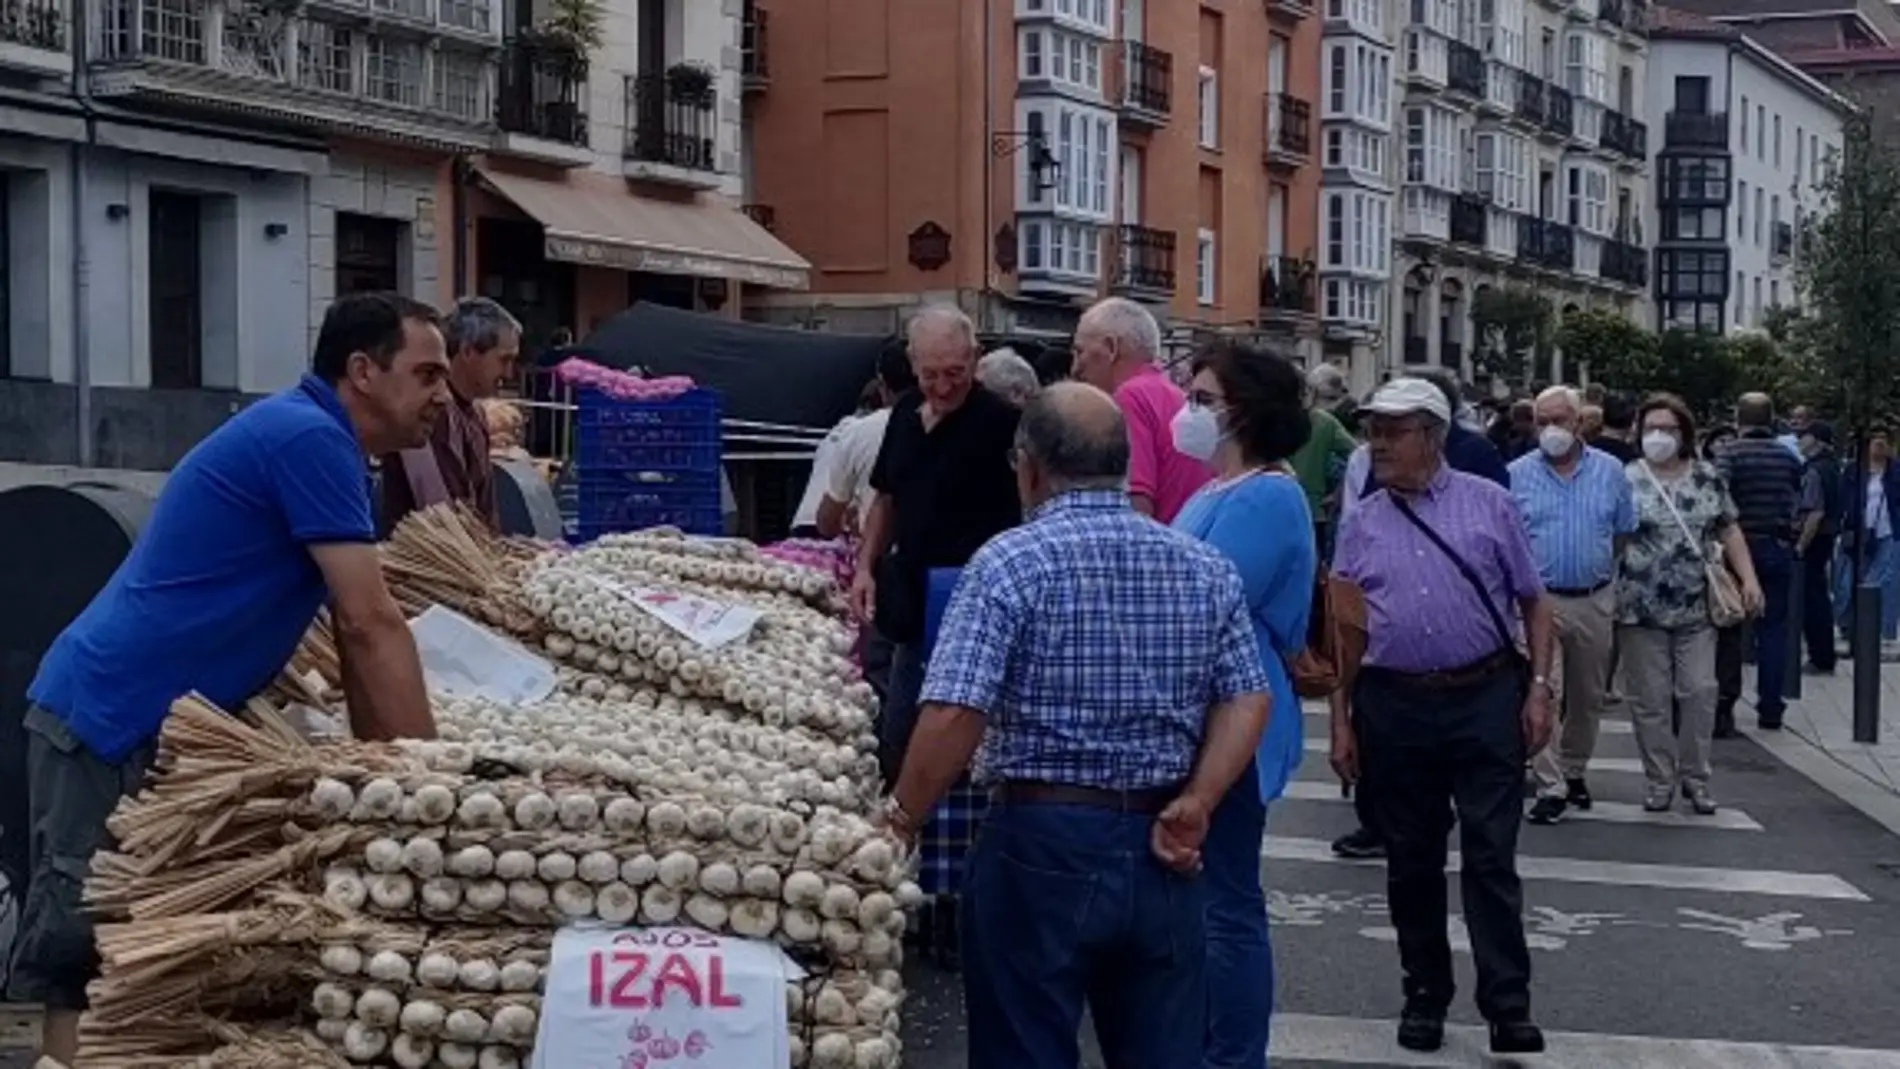 Mercado de ajos , barricas y feria agroganadera para festejar el Día del Blusa y la Neska en Vitoria.